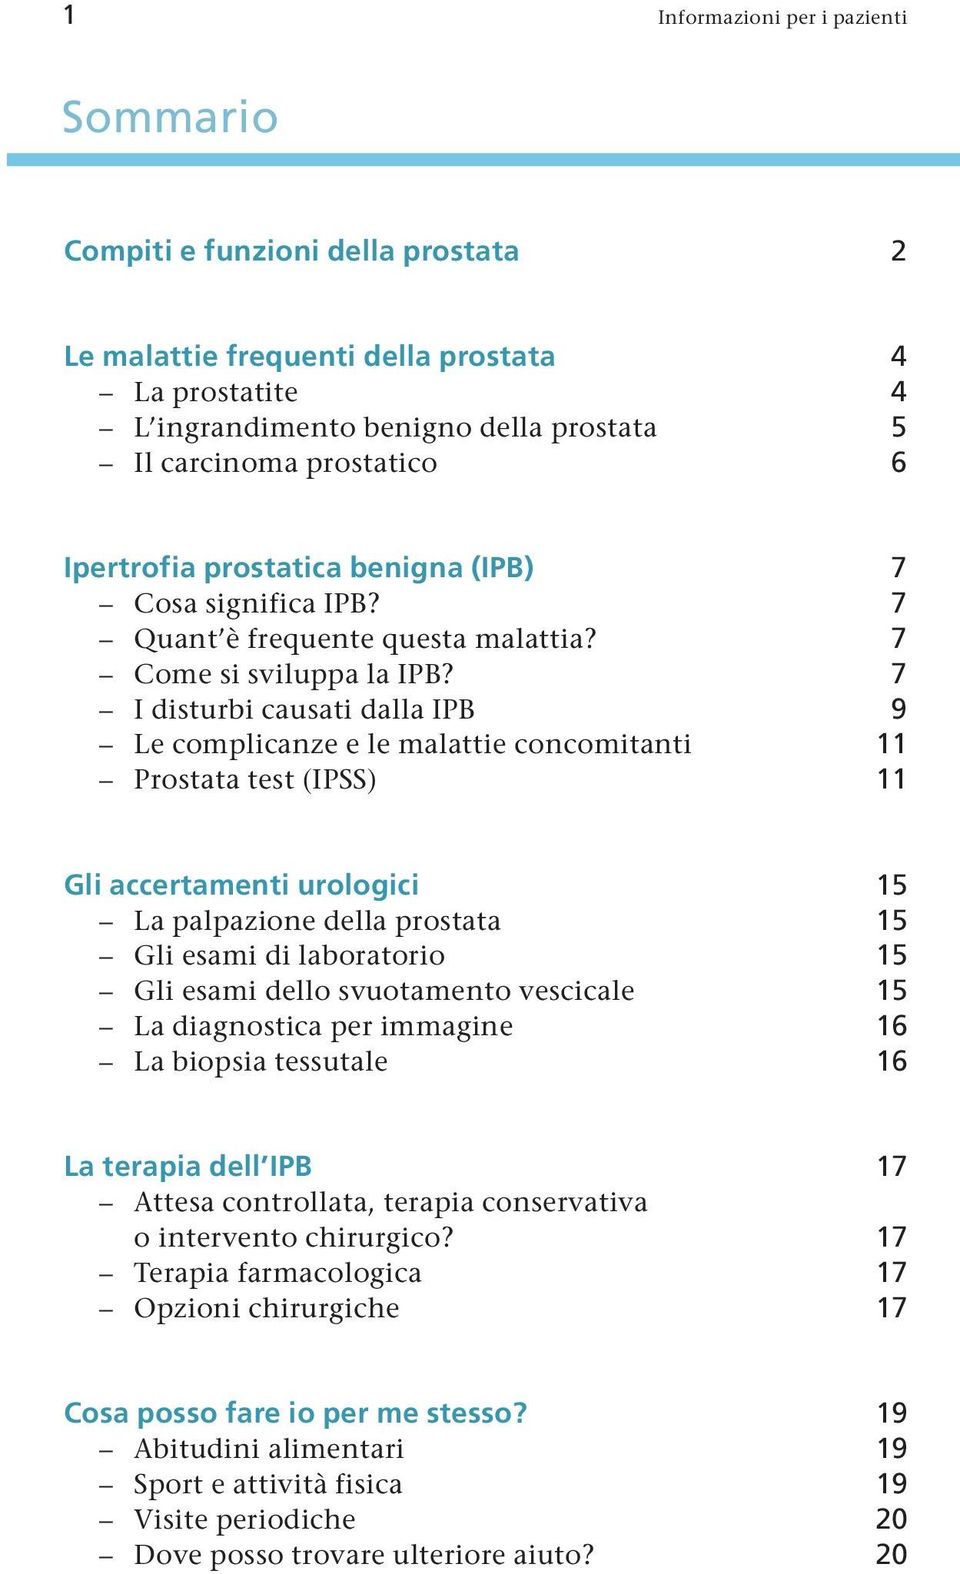 7 I disturbi causati dalla IPB 9 Le complicanze e le malattie concomitanti 11 Prostata test (IPSS) 11 Gli accertamenti urologici 15 La palpazione della prostata 15 Gli esami di laboratorio 15 Gli